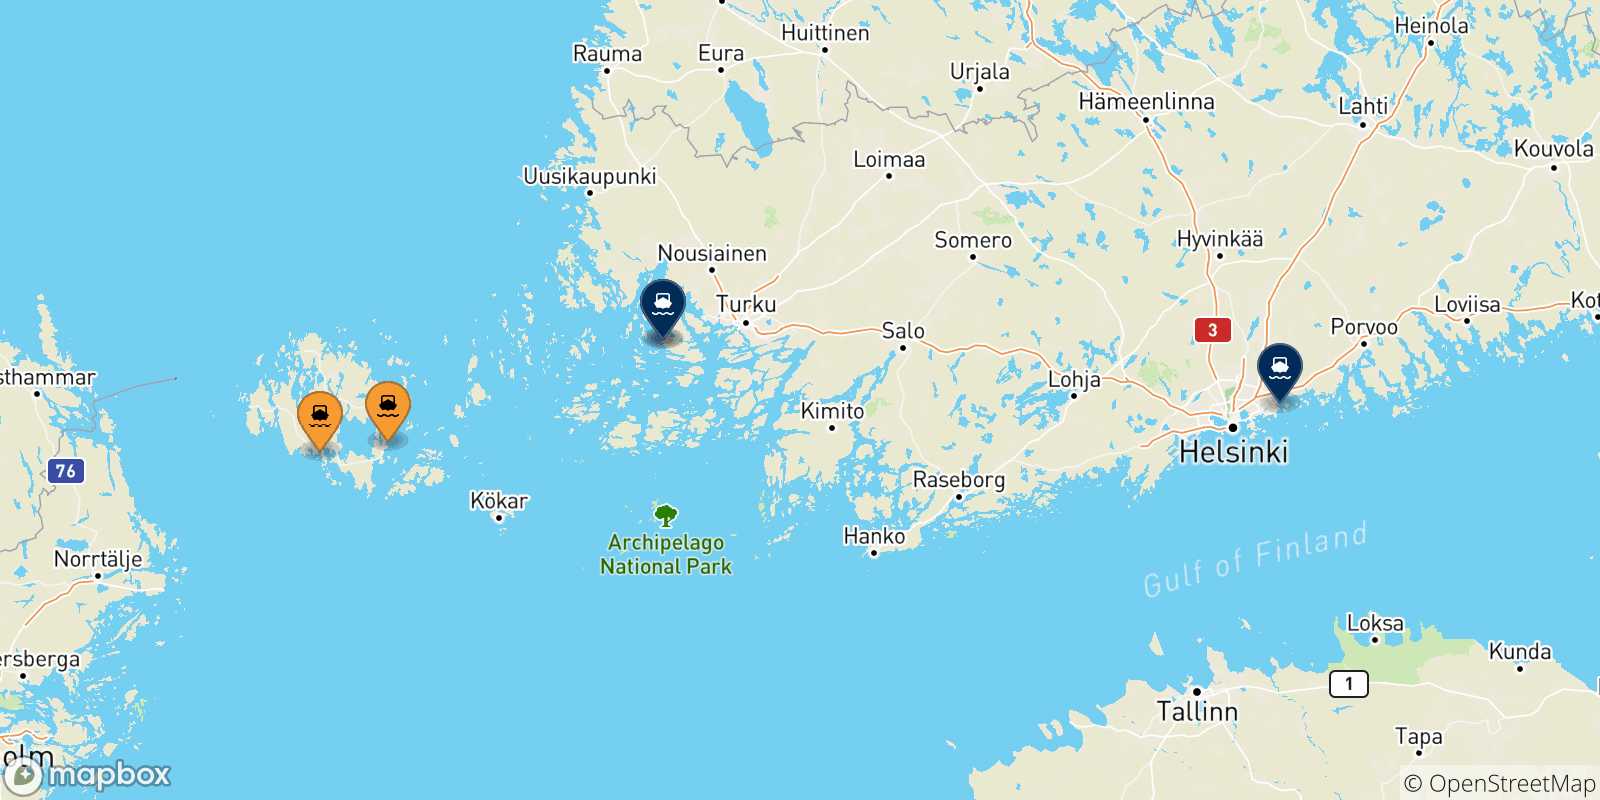 Mappa delle possibili rotte tra le Isole Aland e la Finlandia